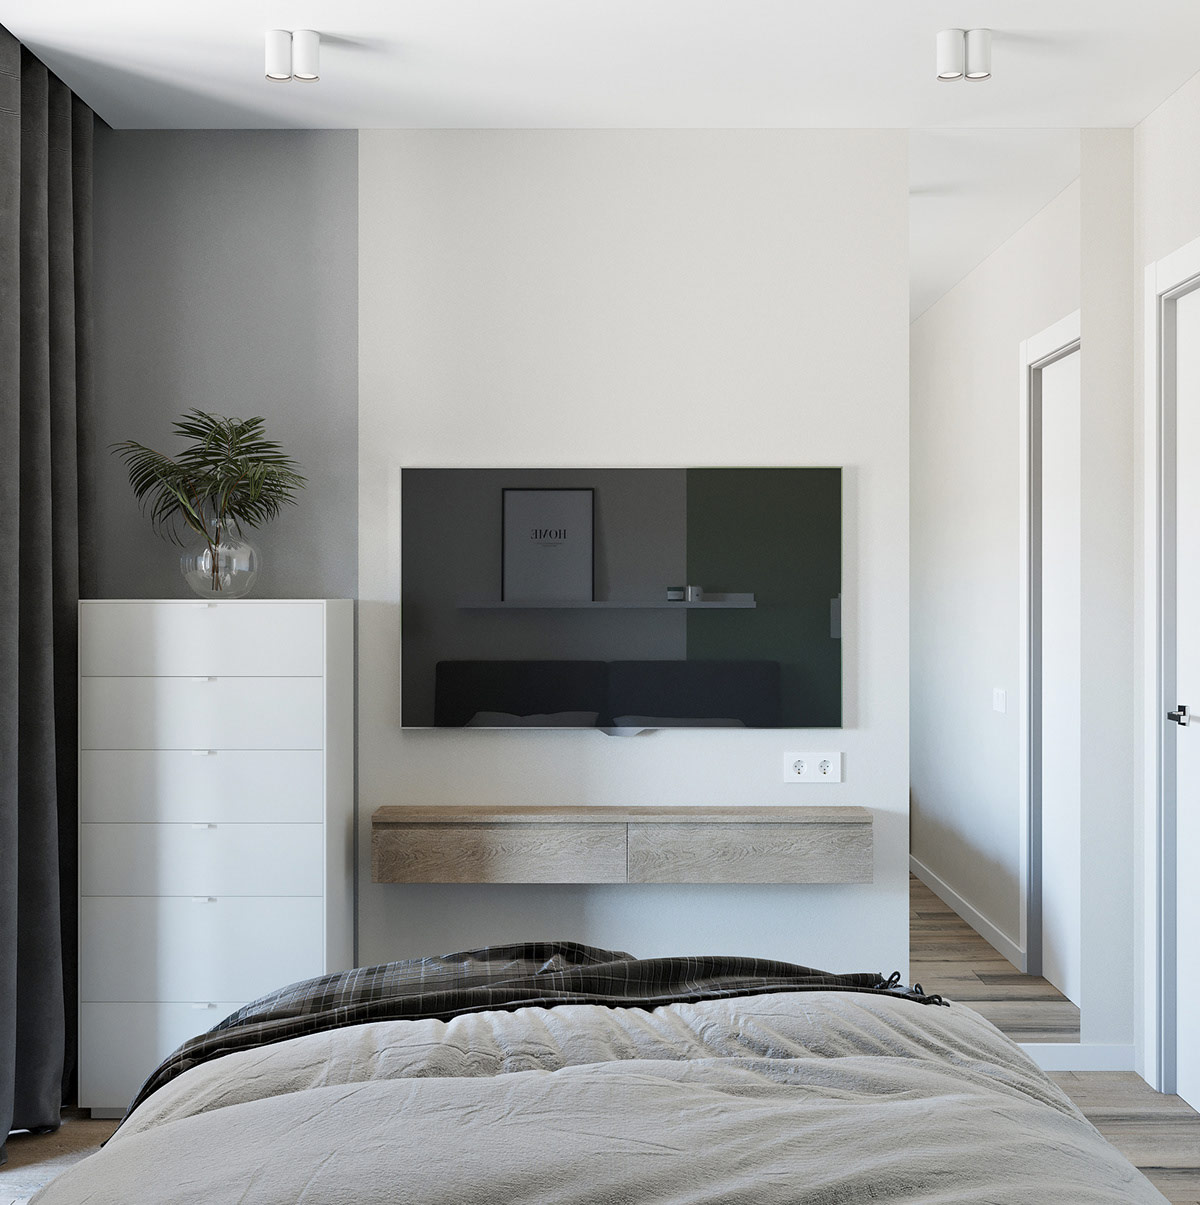 2间40平简洁紧凑的小公寓空间设计